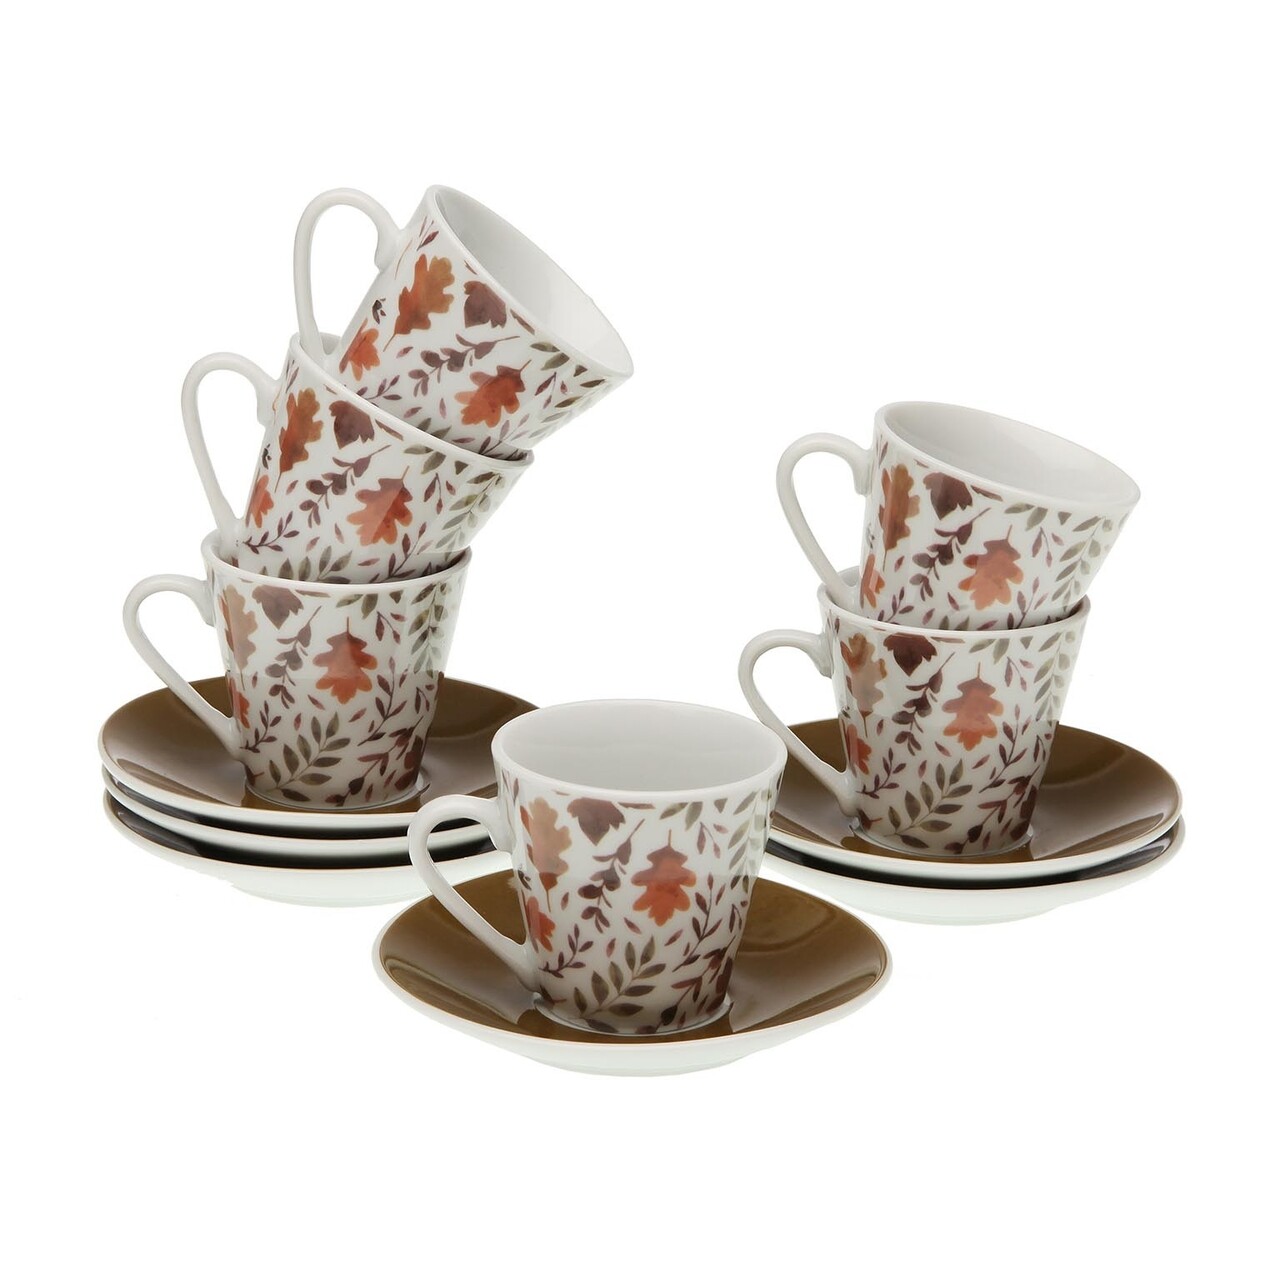 Aya Leaves 6 db Kávés csésze kistányérral, Versa, 5.8 x 5.8 x 6 cm, porcelán